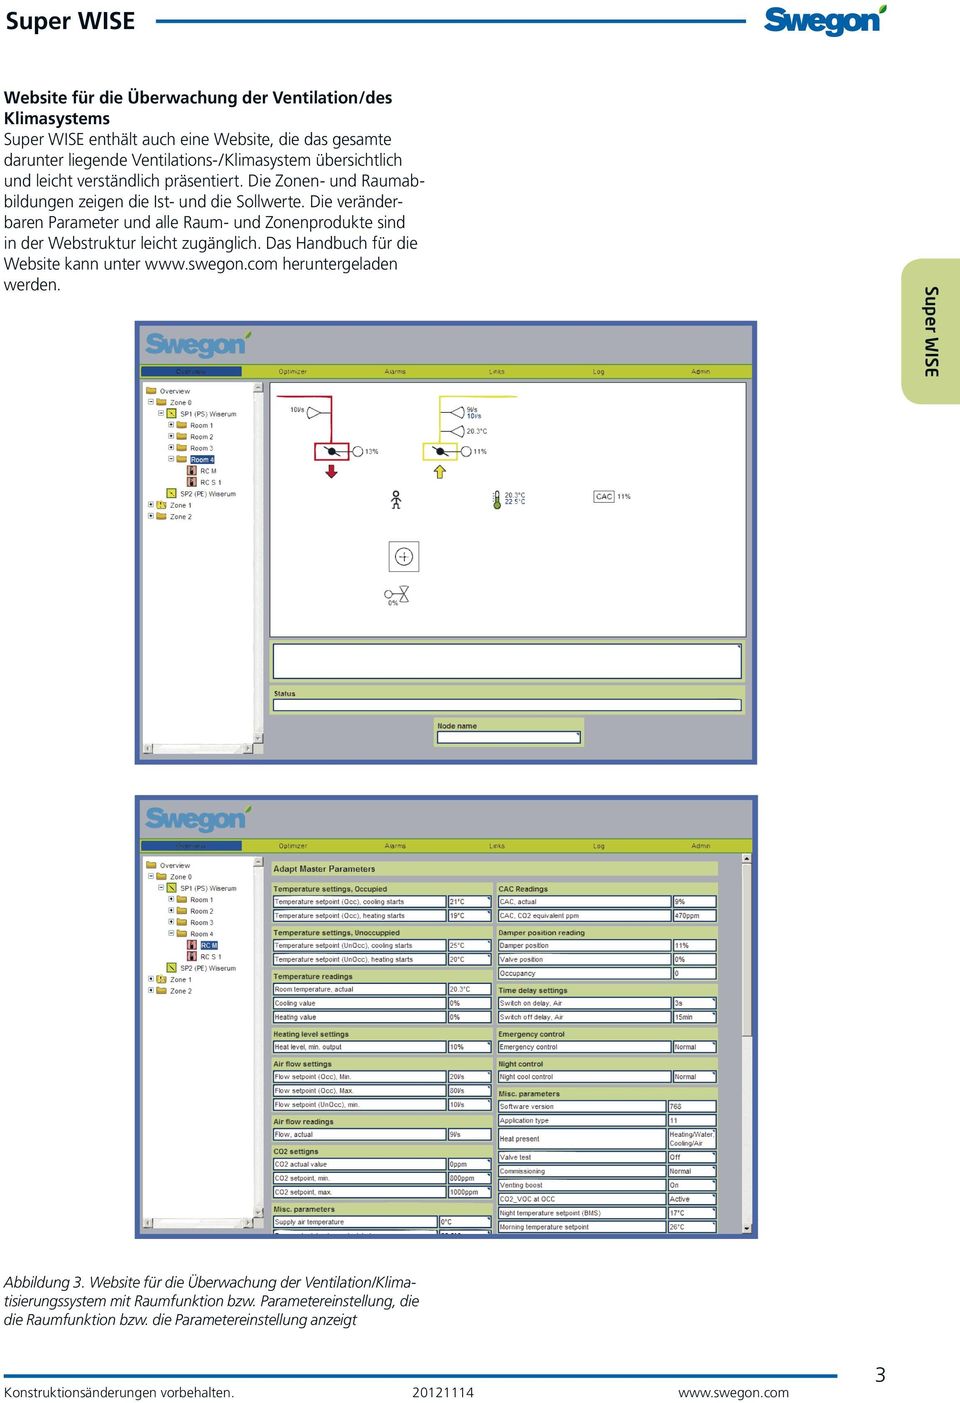 Die veränderbaren Parameter und alle Raum- und Zonenprodukte sind in der Webstruktur leicht zugänglich. Das Handbuch für die Website kann unter www.swegon.